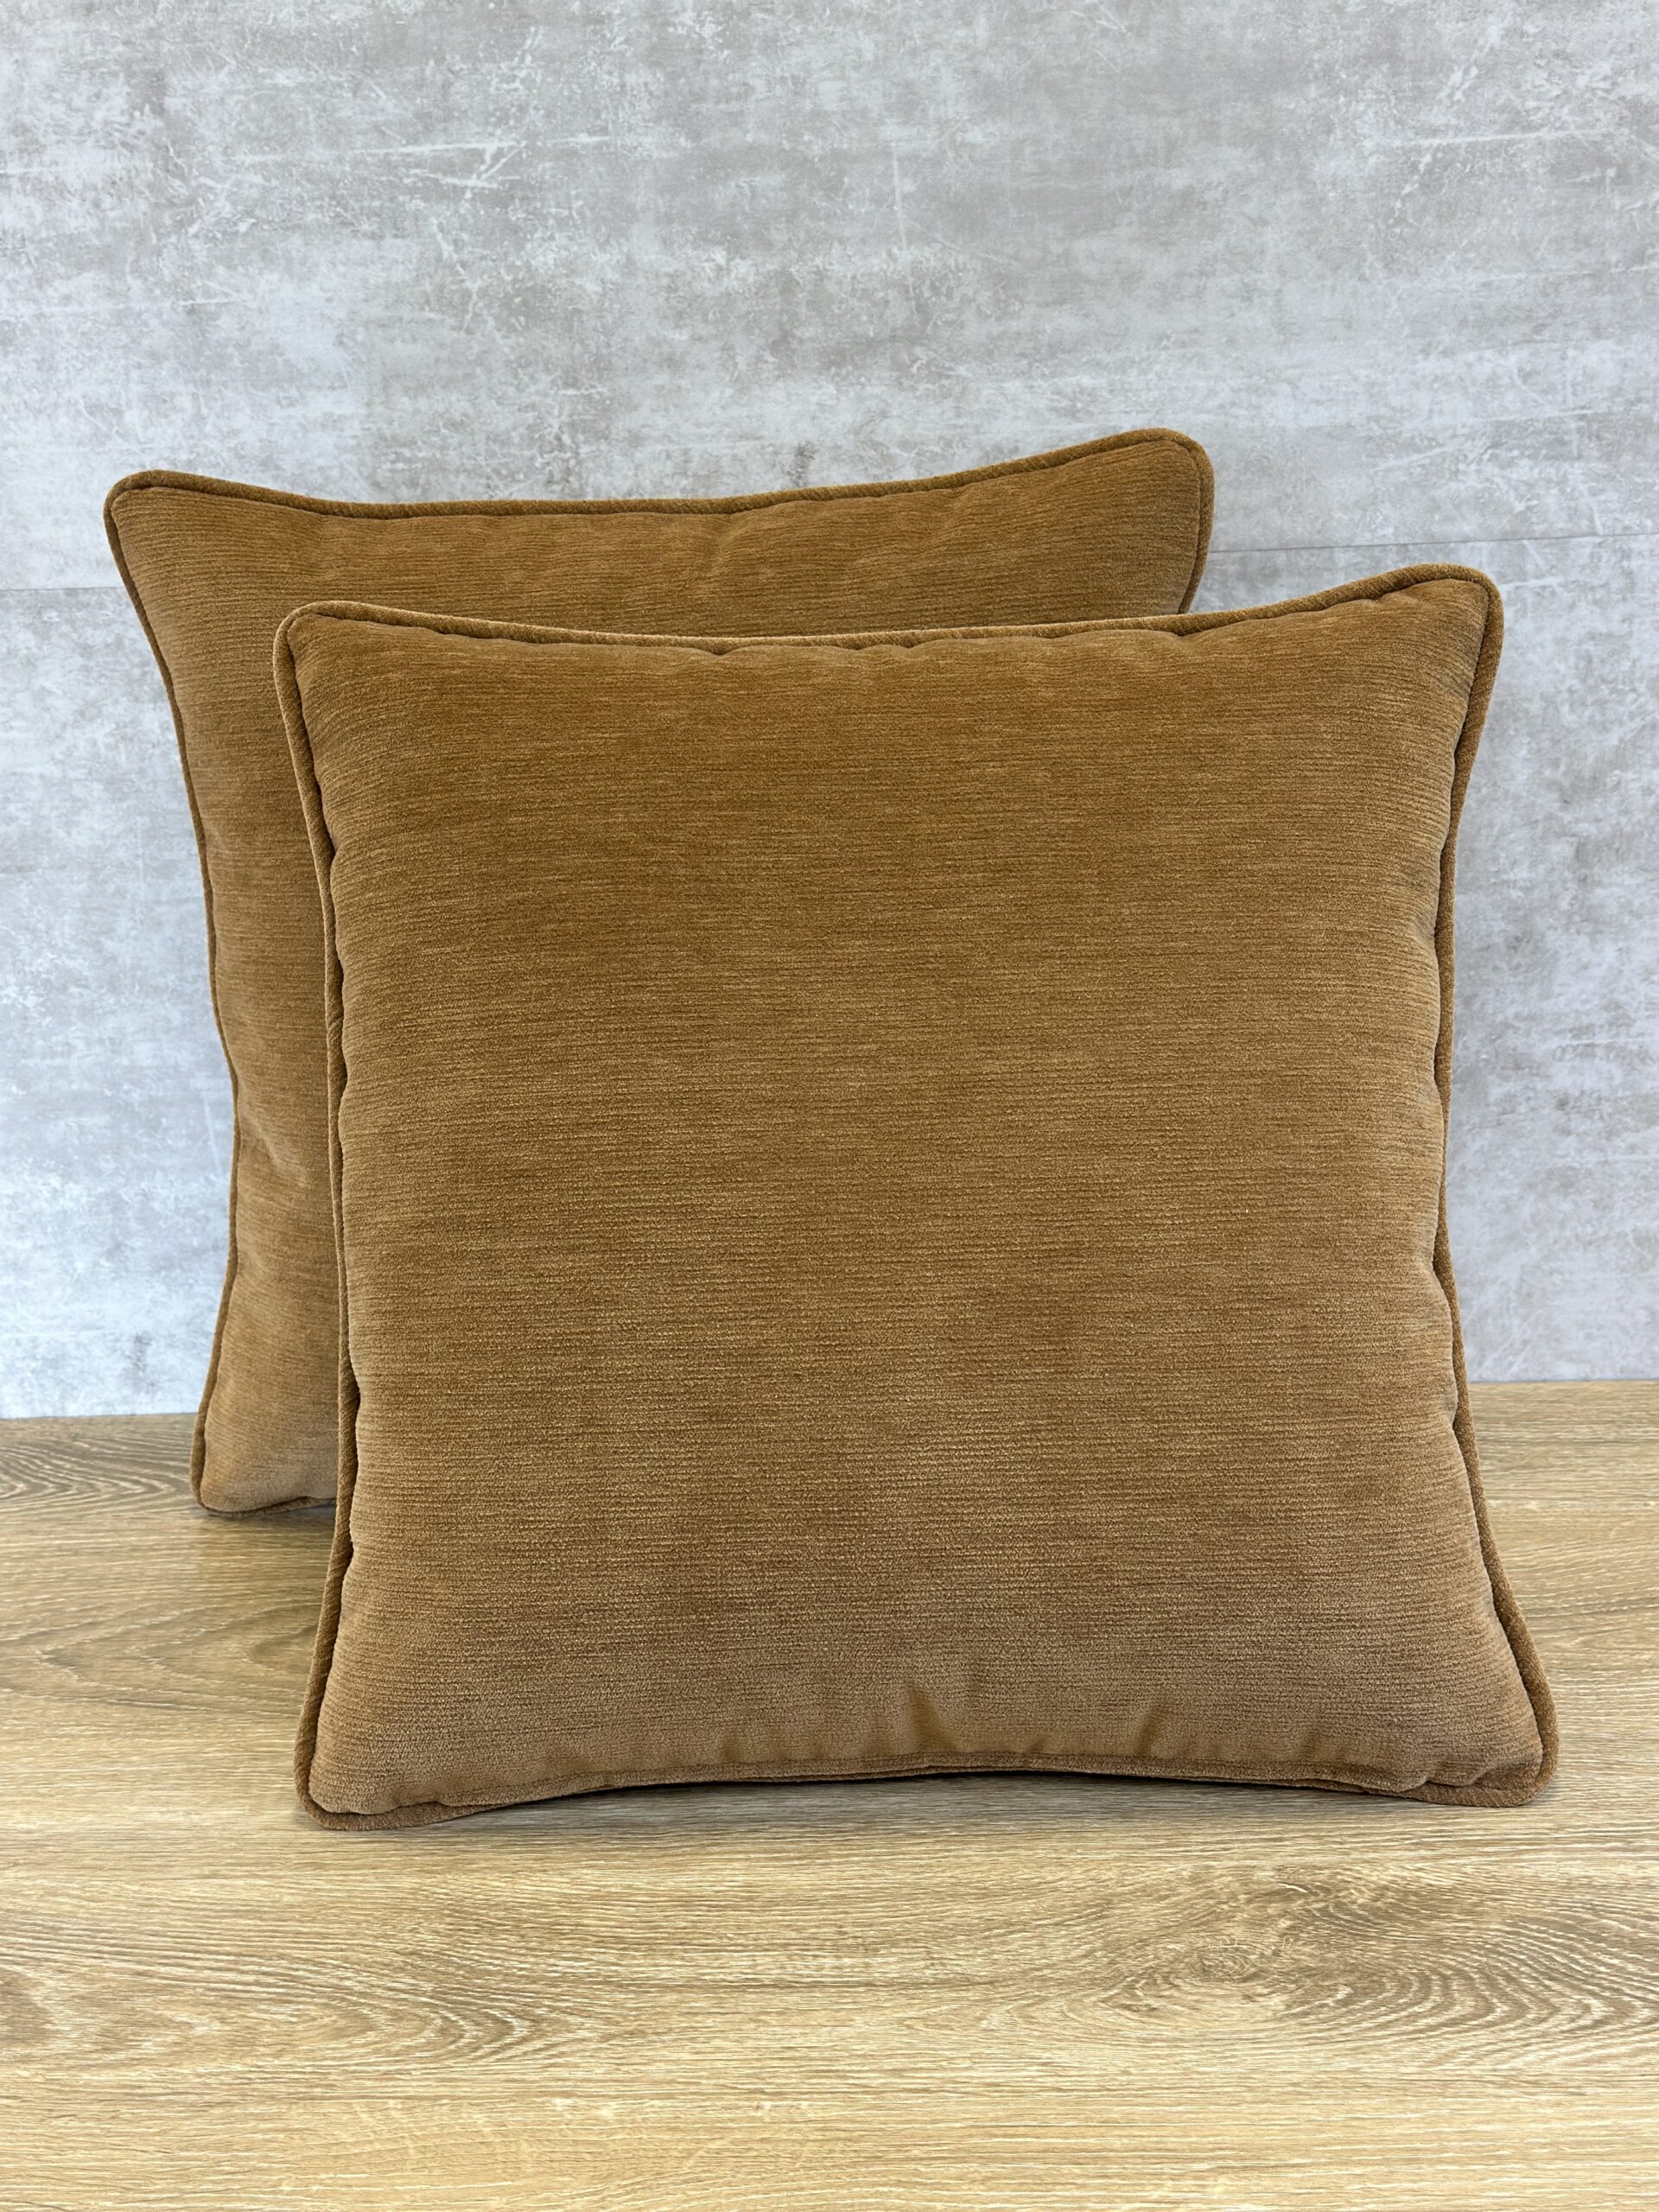 DesignTex Samba Pillows